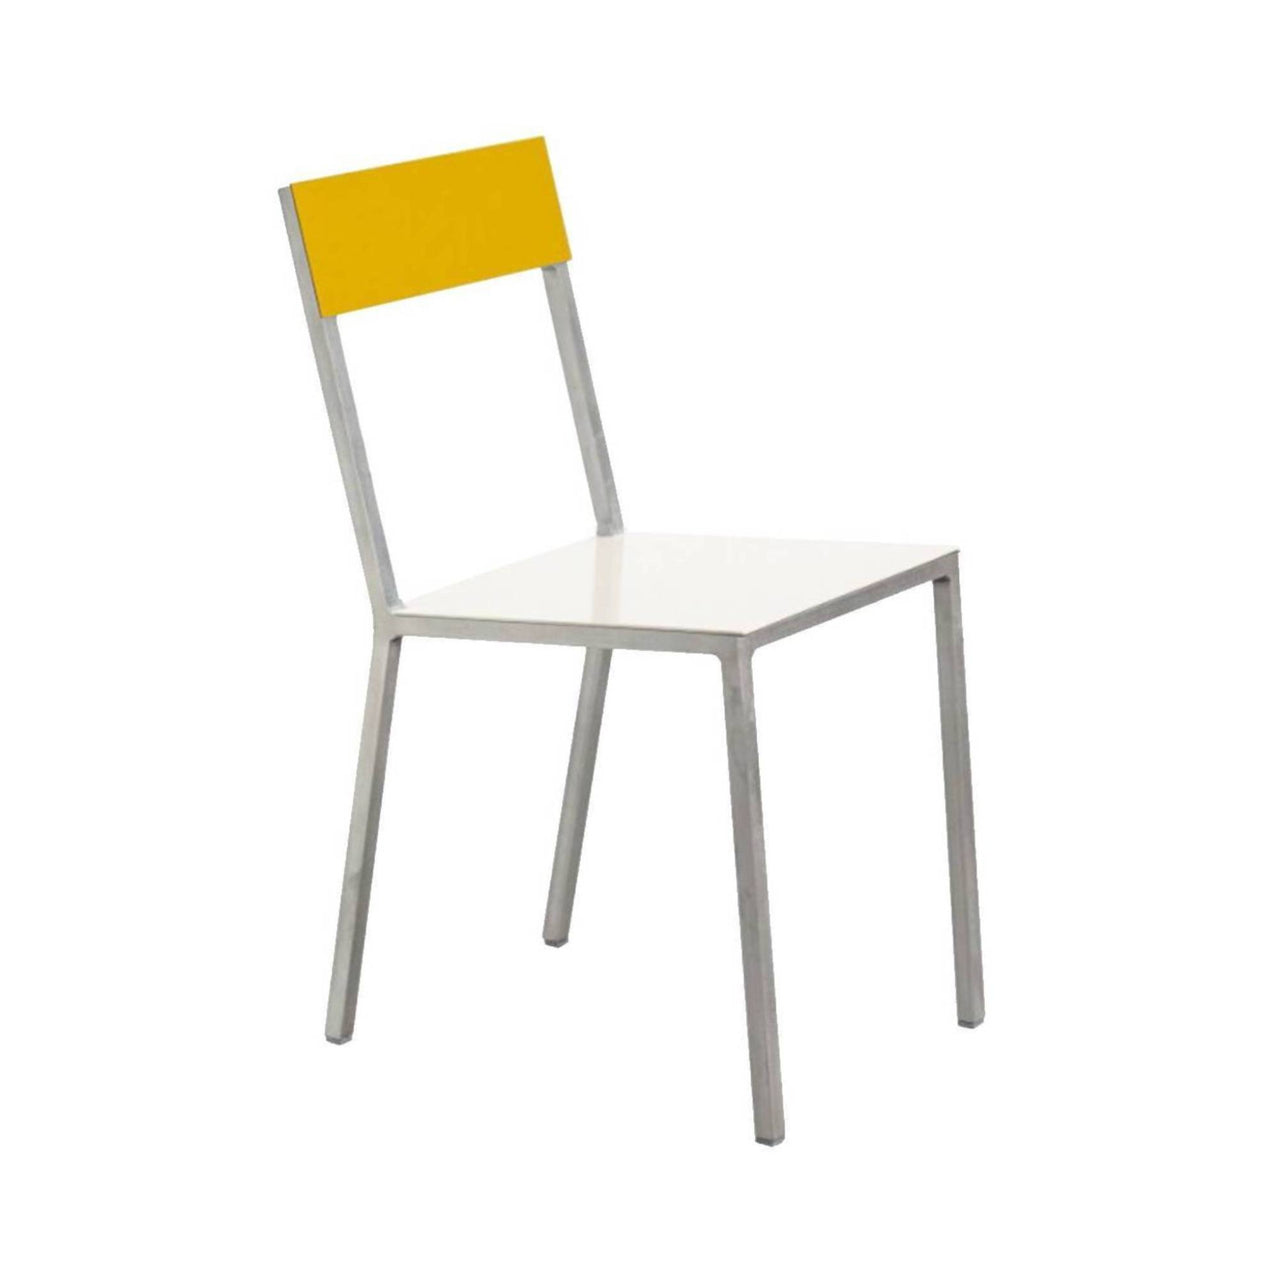 Alu Chair: White + Yellow + Aluminum